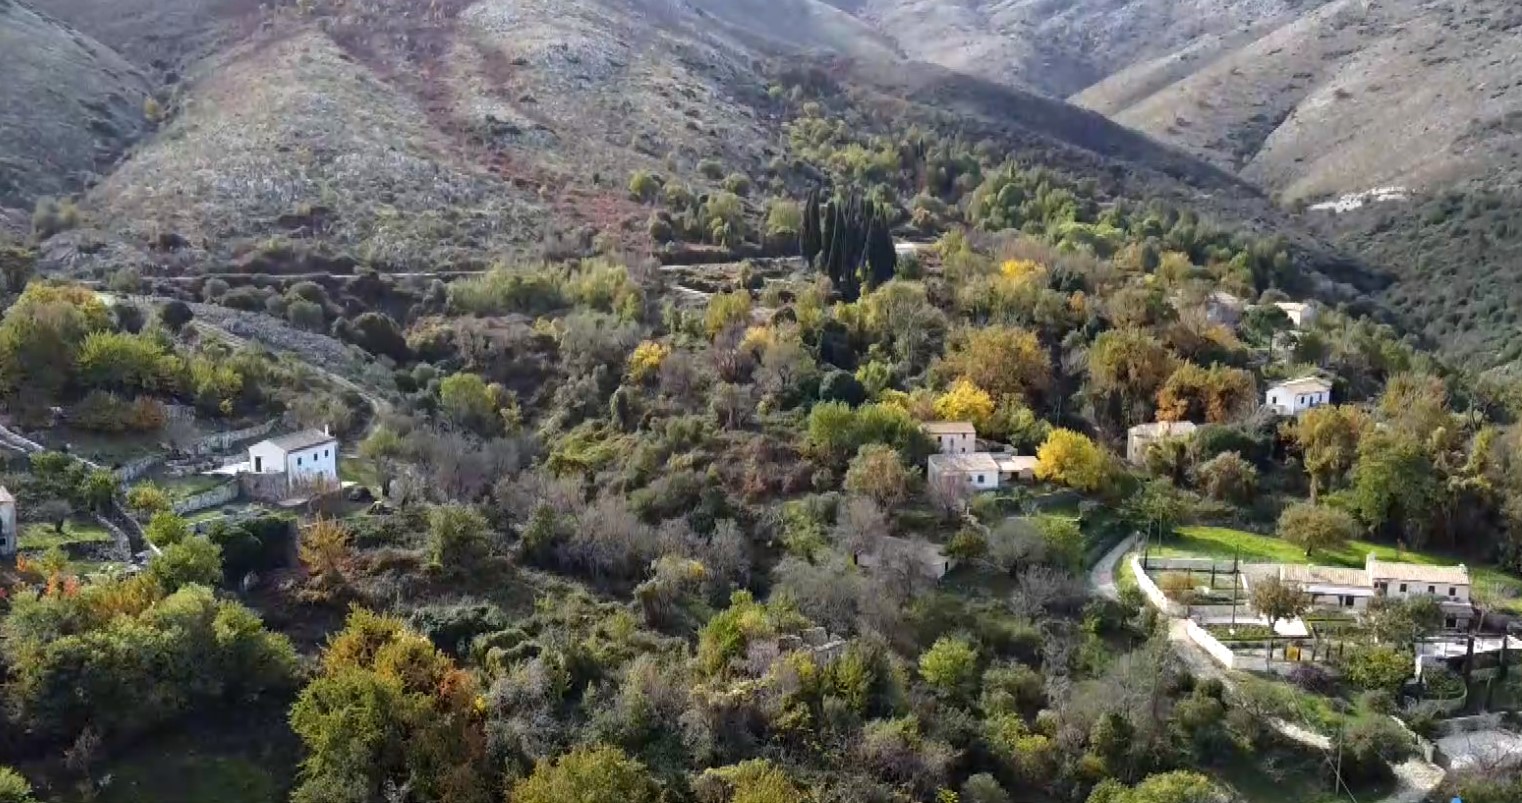 Παλιά Περίθεια: Το αρχαιότερο χωριό της Κέρκυρας